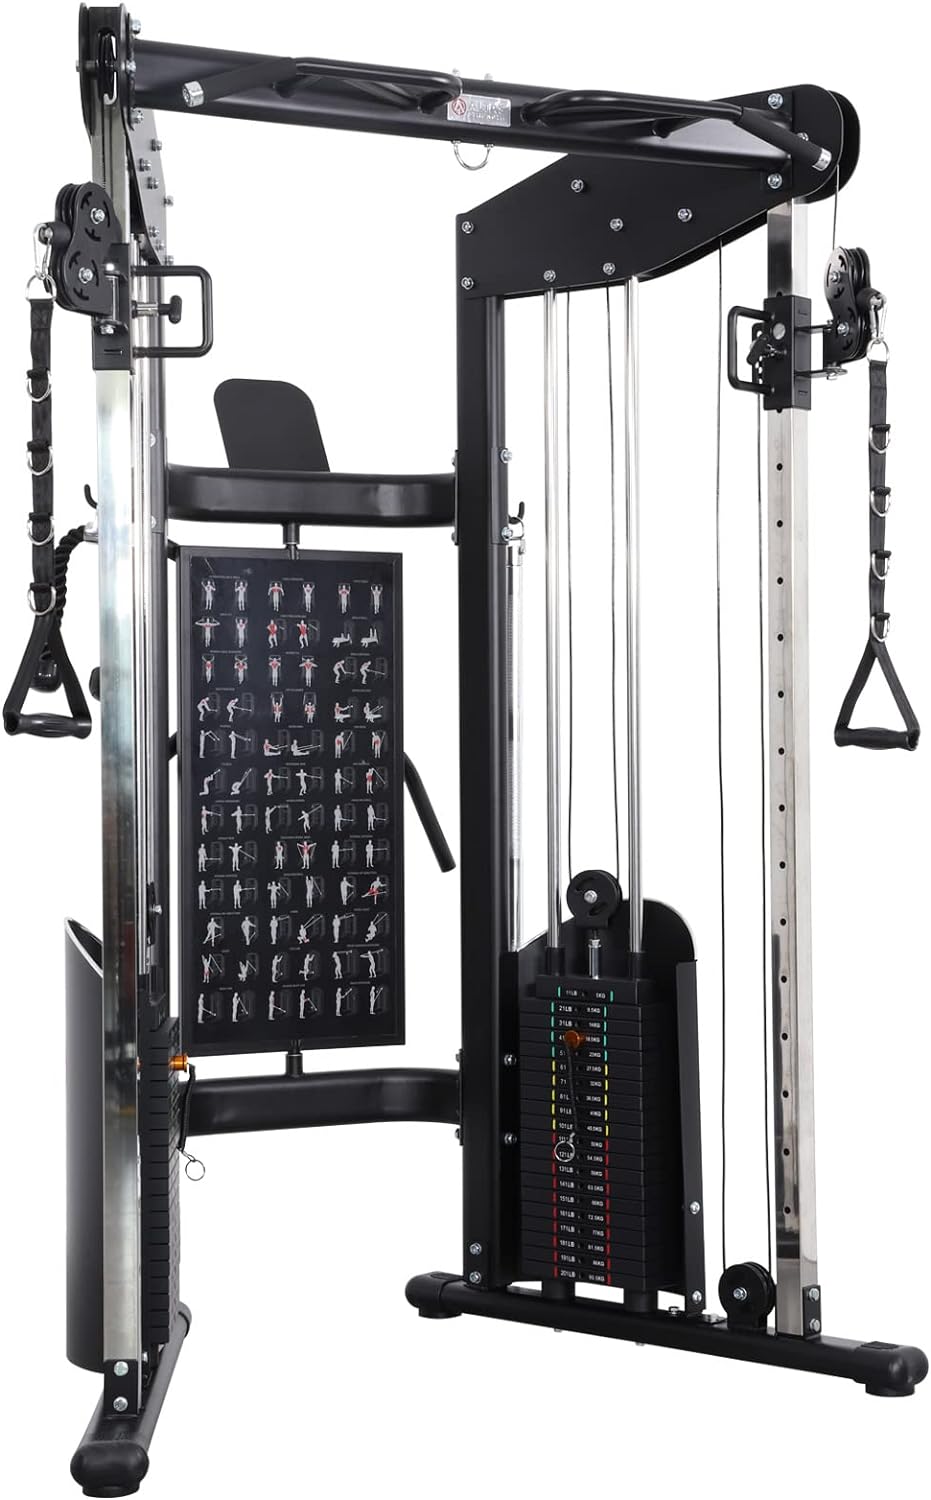 ALTAS Strength 3073 Home Gym Machine Review